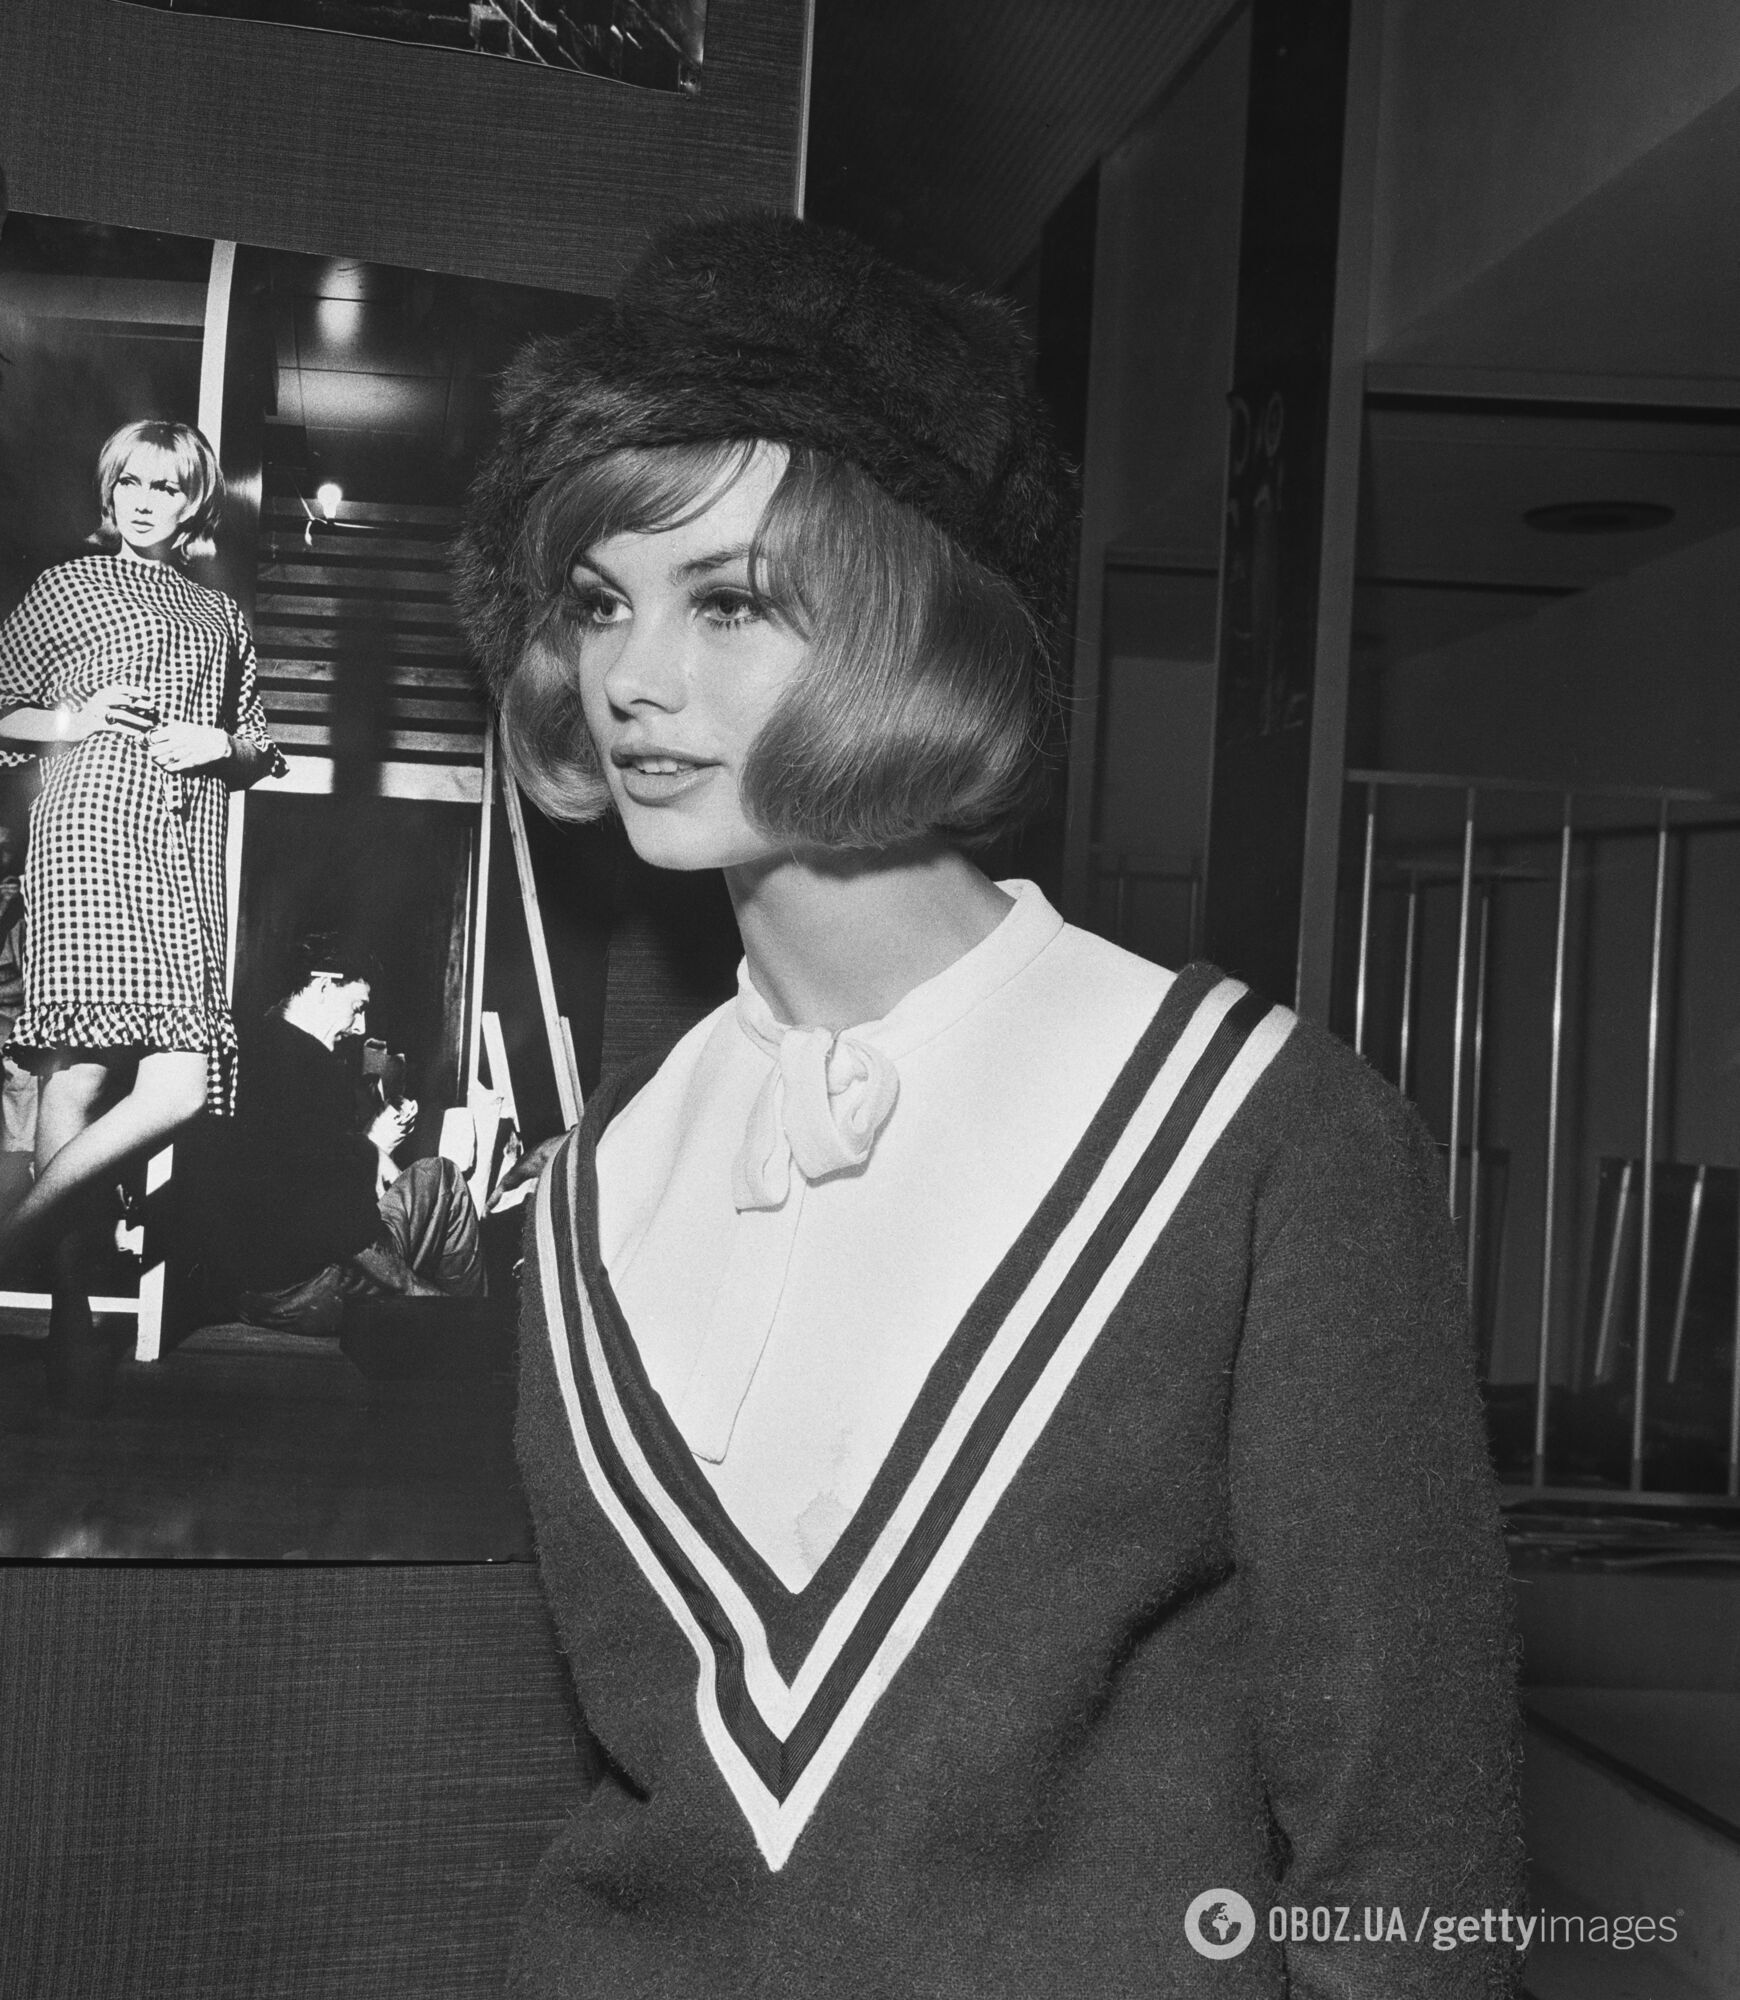 Эта прическа из 60-х снова ворвалась в моду! Подходит всем женщинам и заметно молодит. Фото